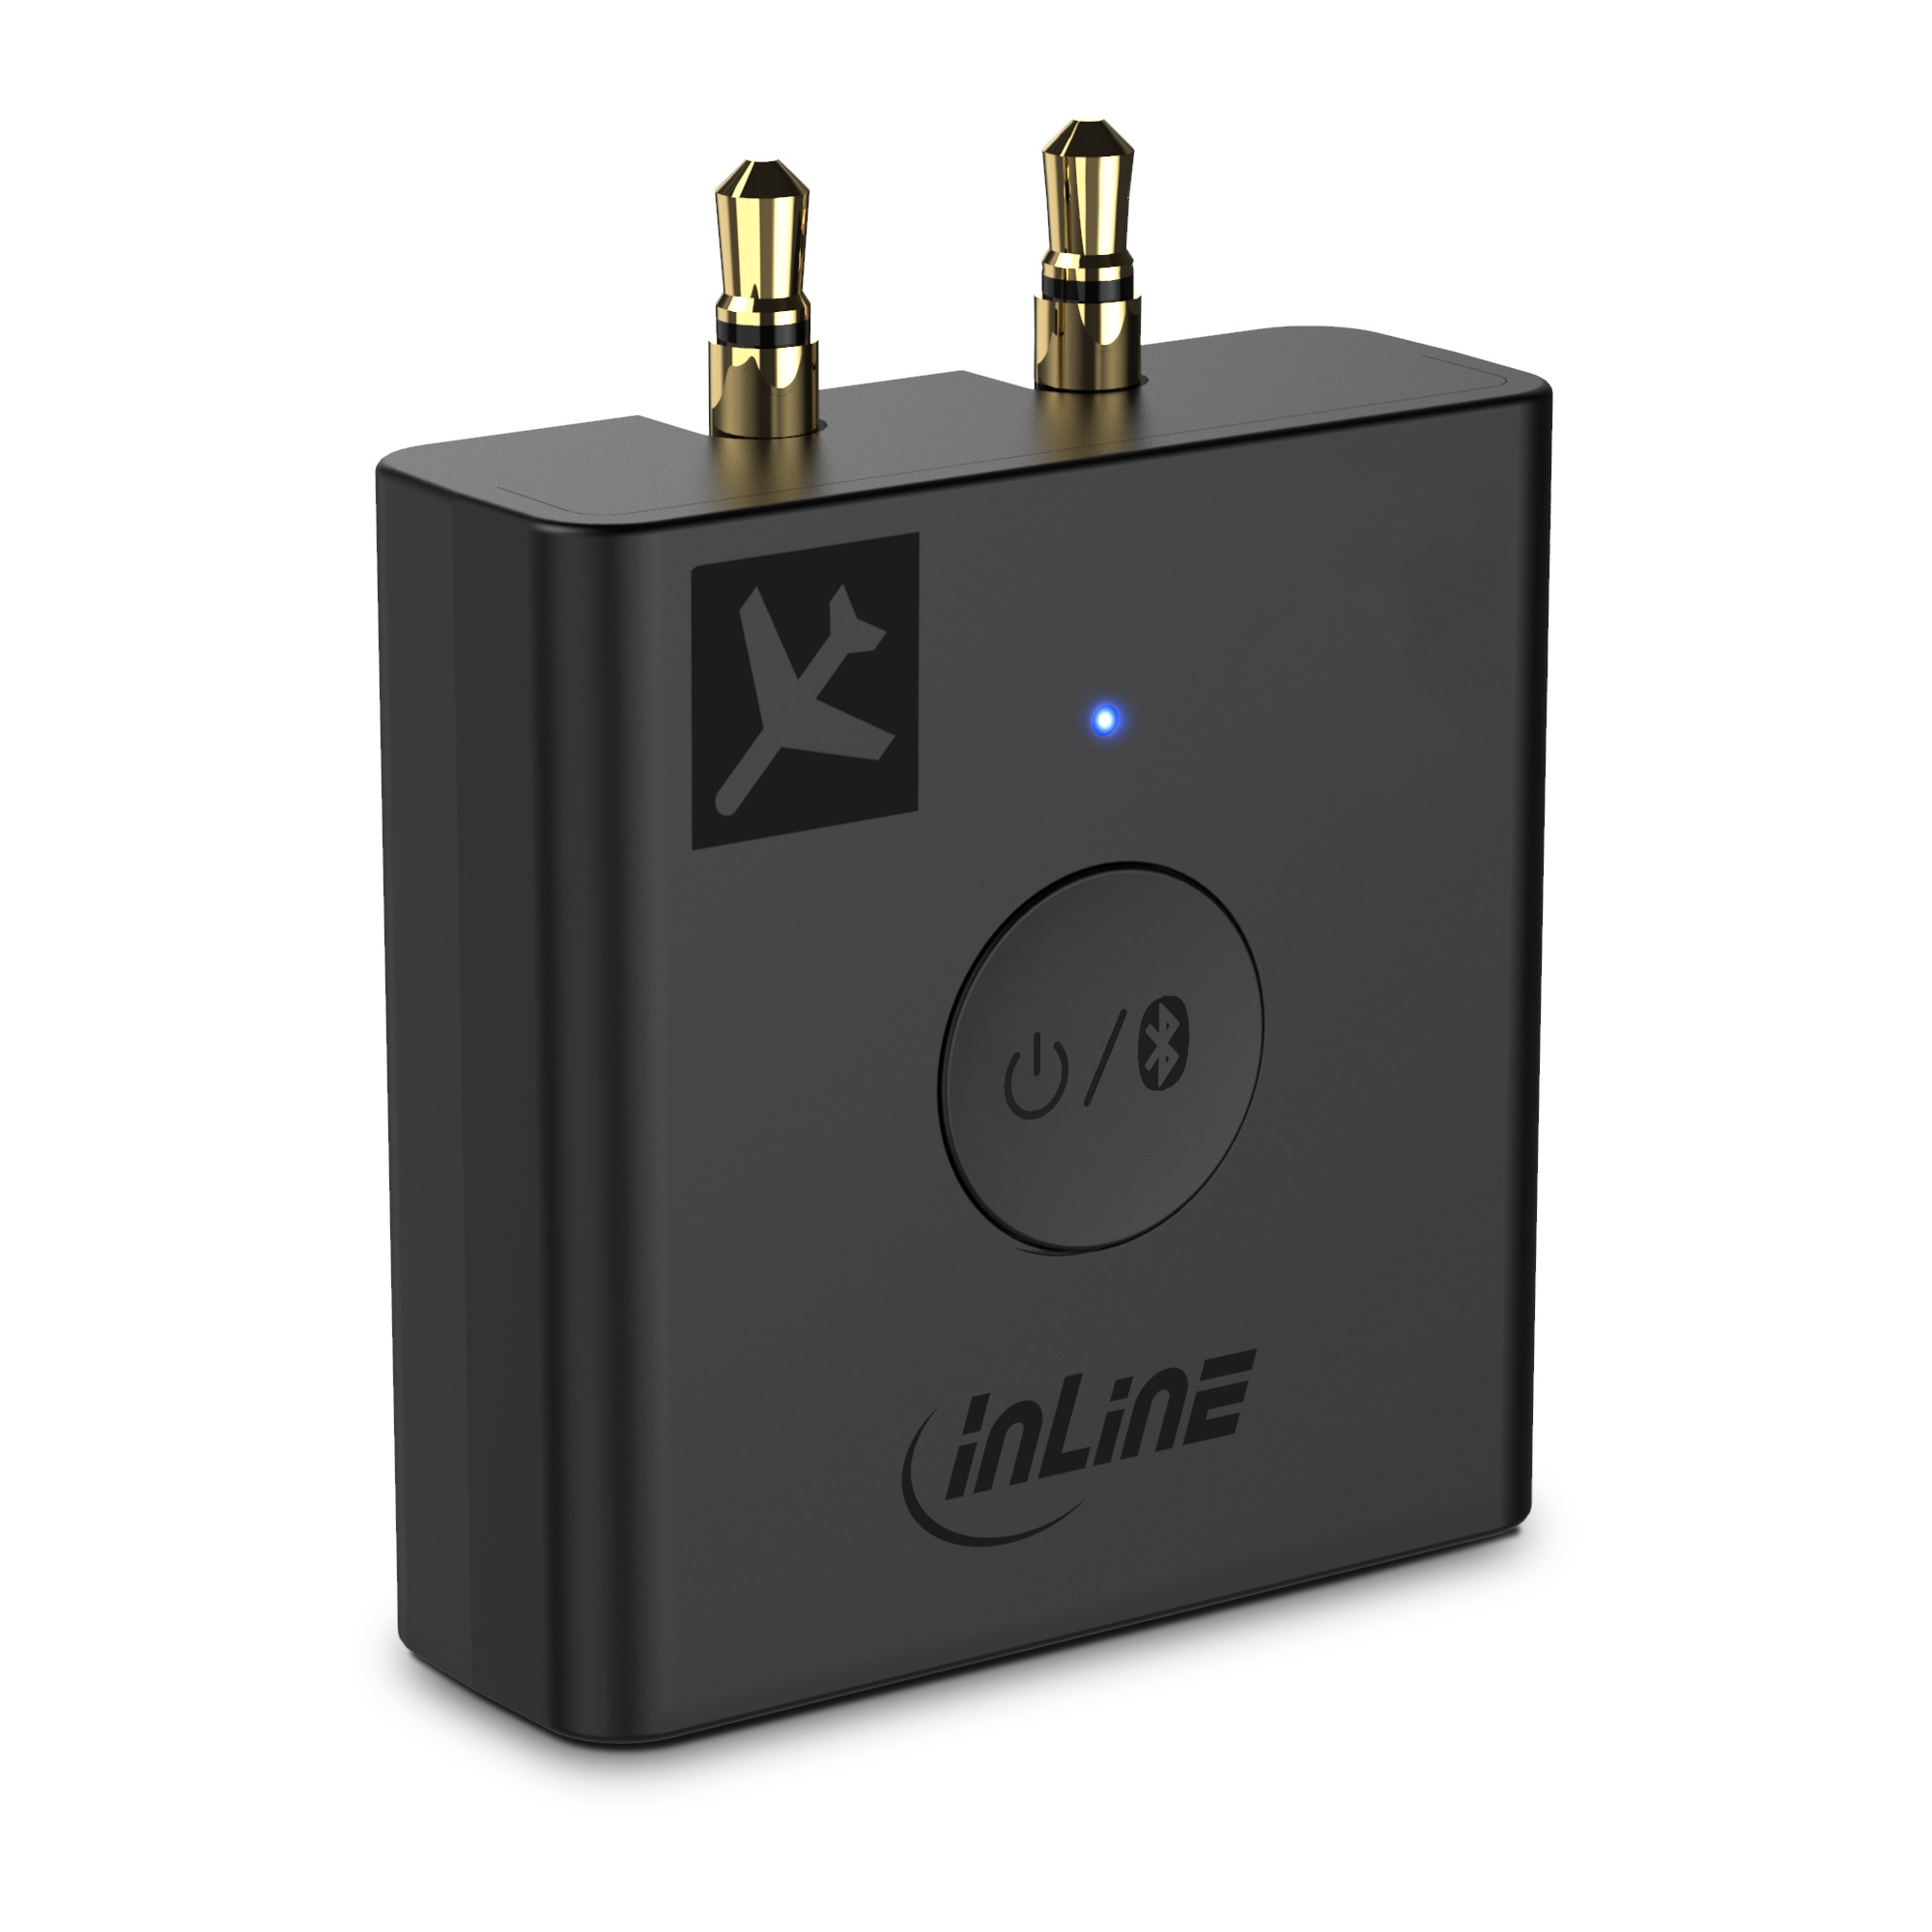 2 in 1 Universal Wireless Bluetooth Adapter 5.0 Sender Empfänger